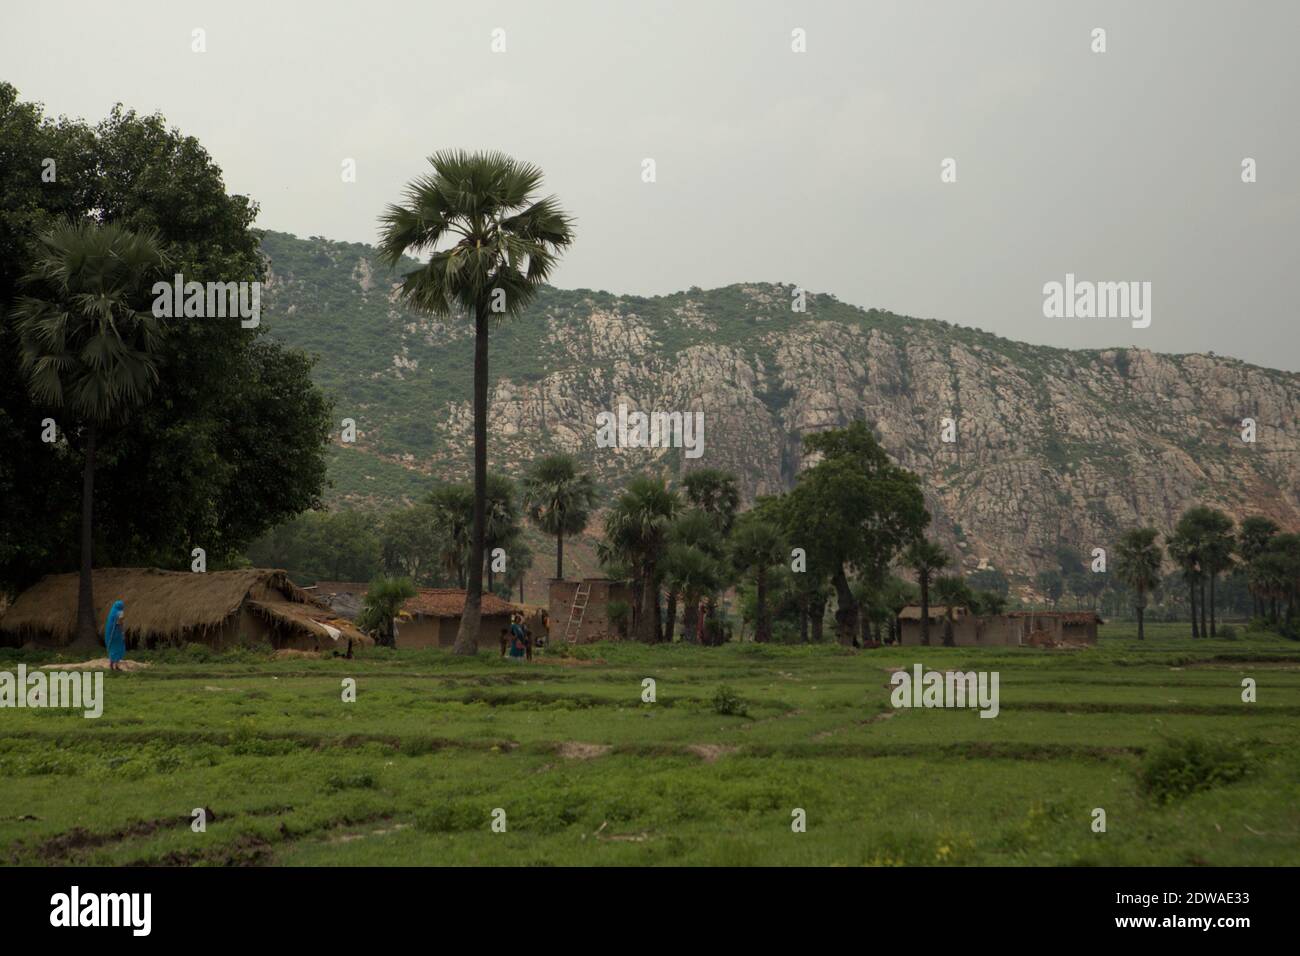 Landschaft von Faldu, einem landwirtschaftlichen Dorf in Bihar, Indien. Stockfoto